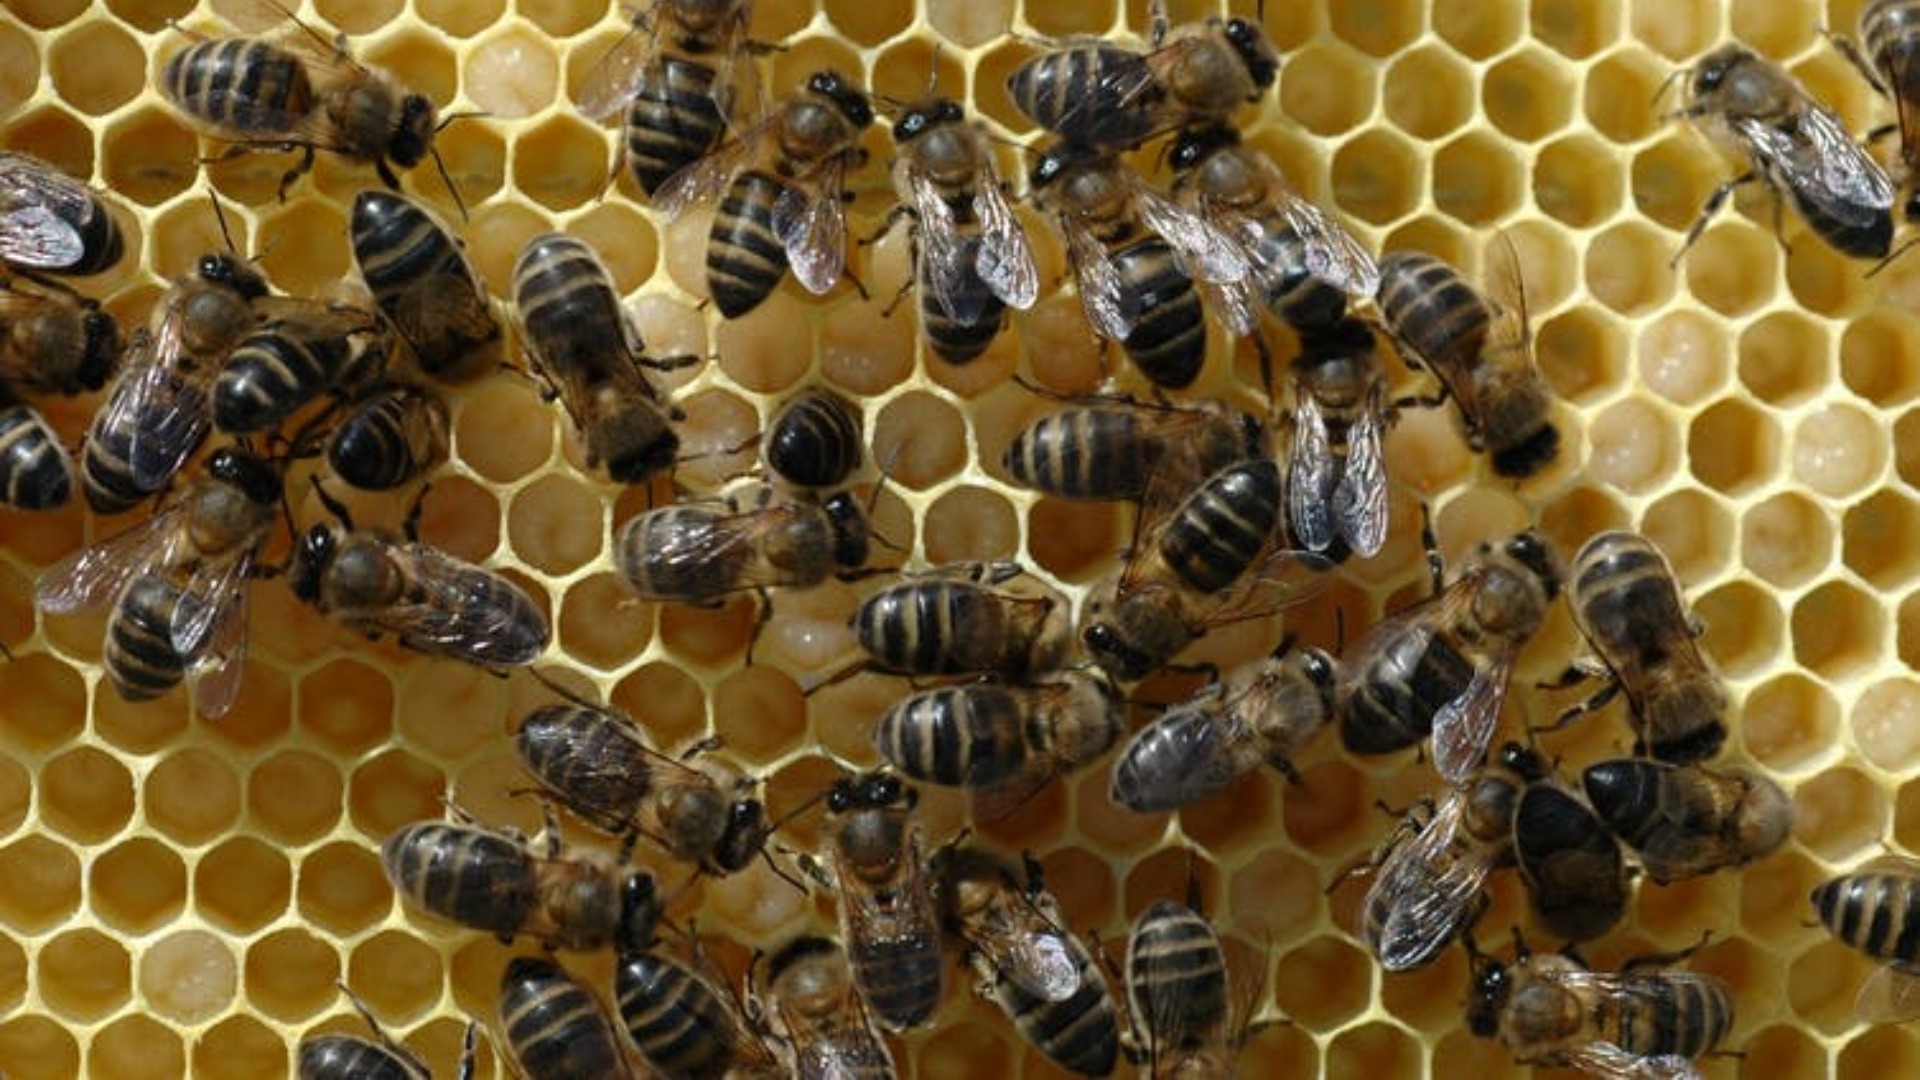 Las abejas indican la presencia de microplásticos en el medio ambiente